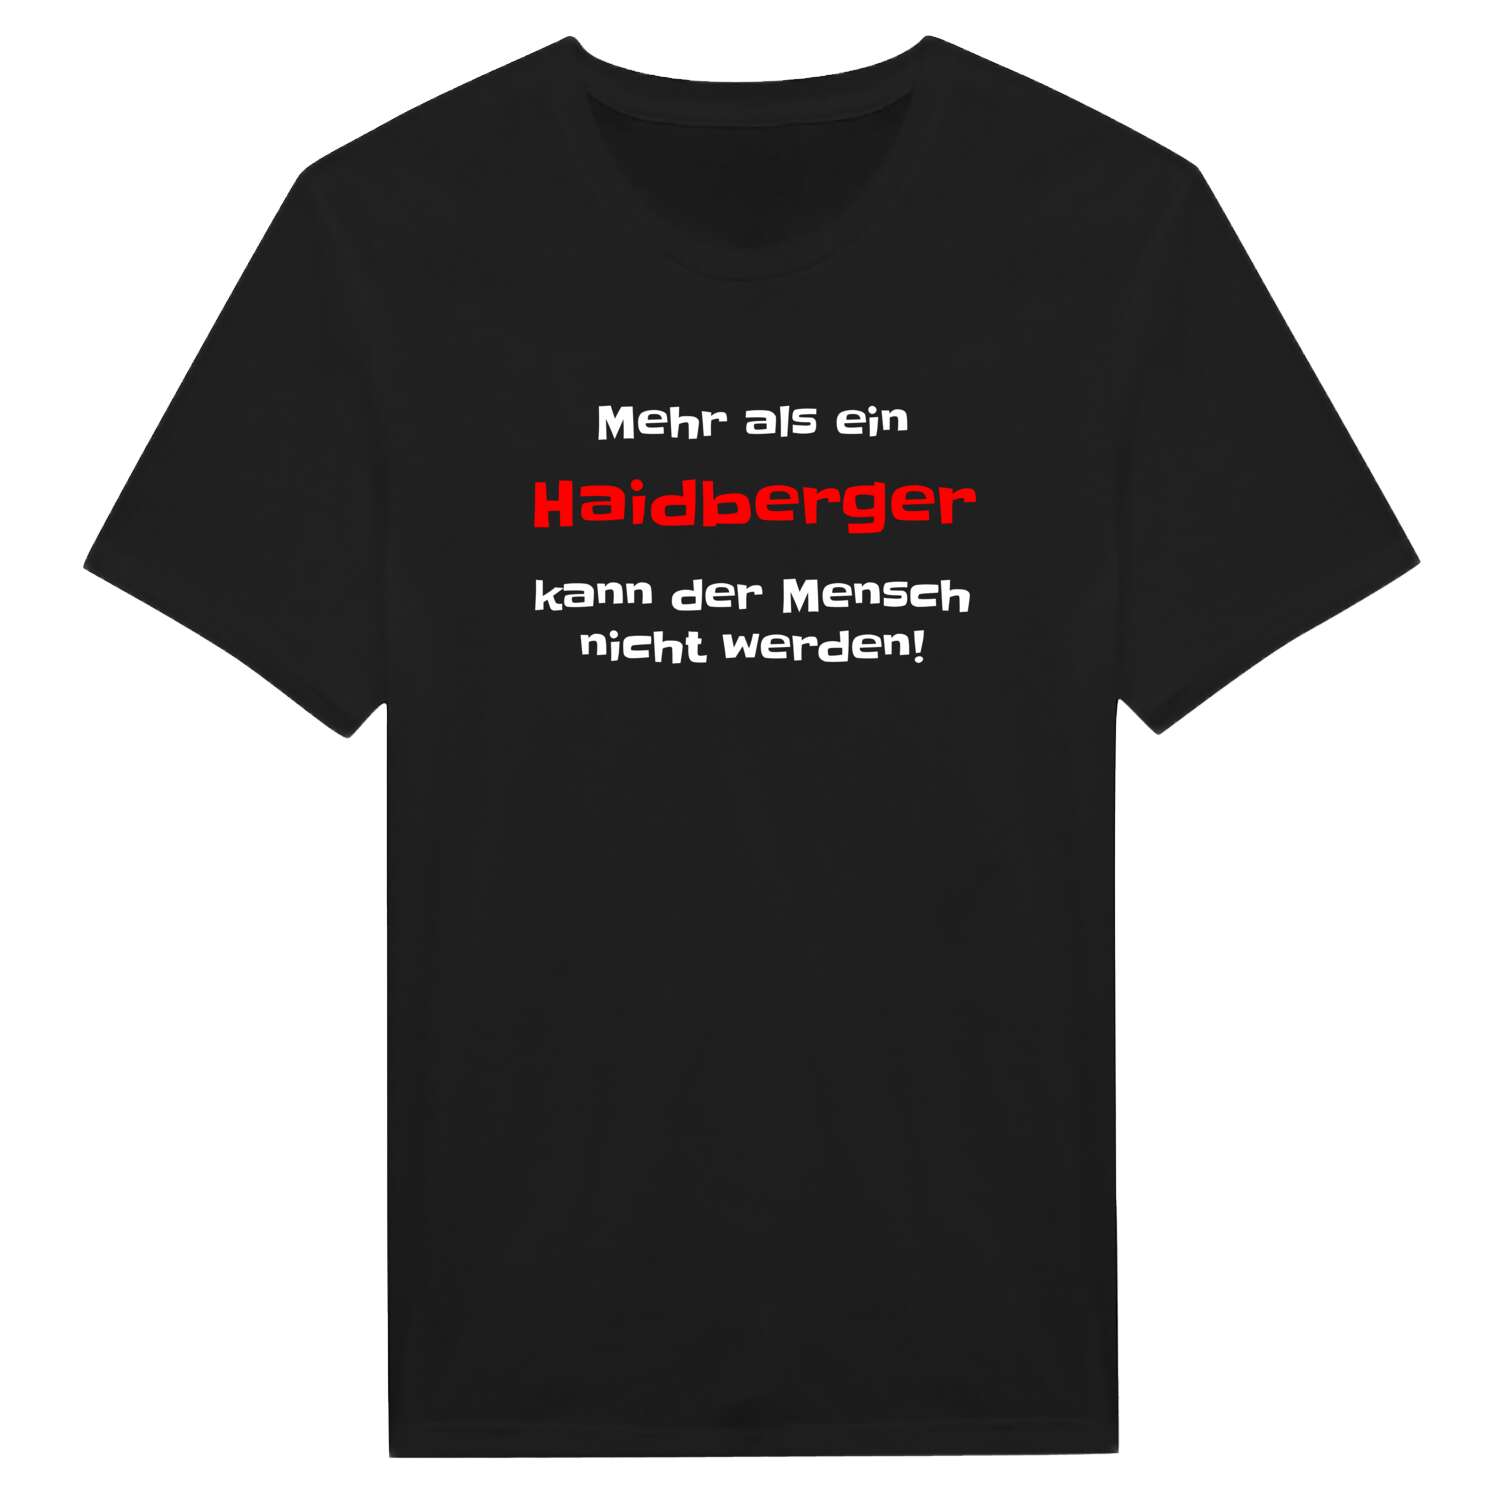 Haidberg T-Shirt »Mehr als ein«